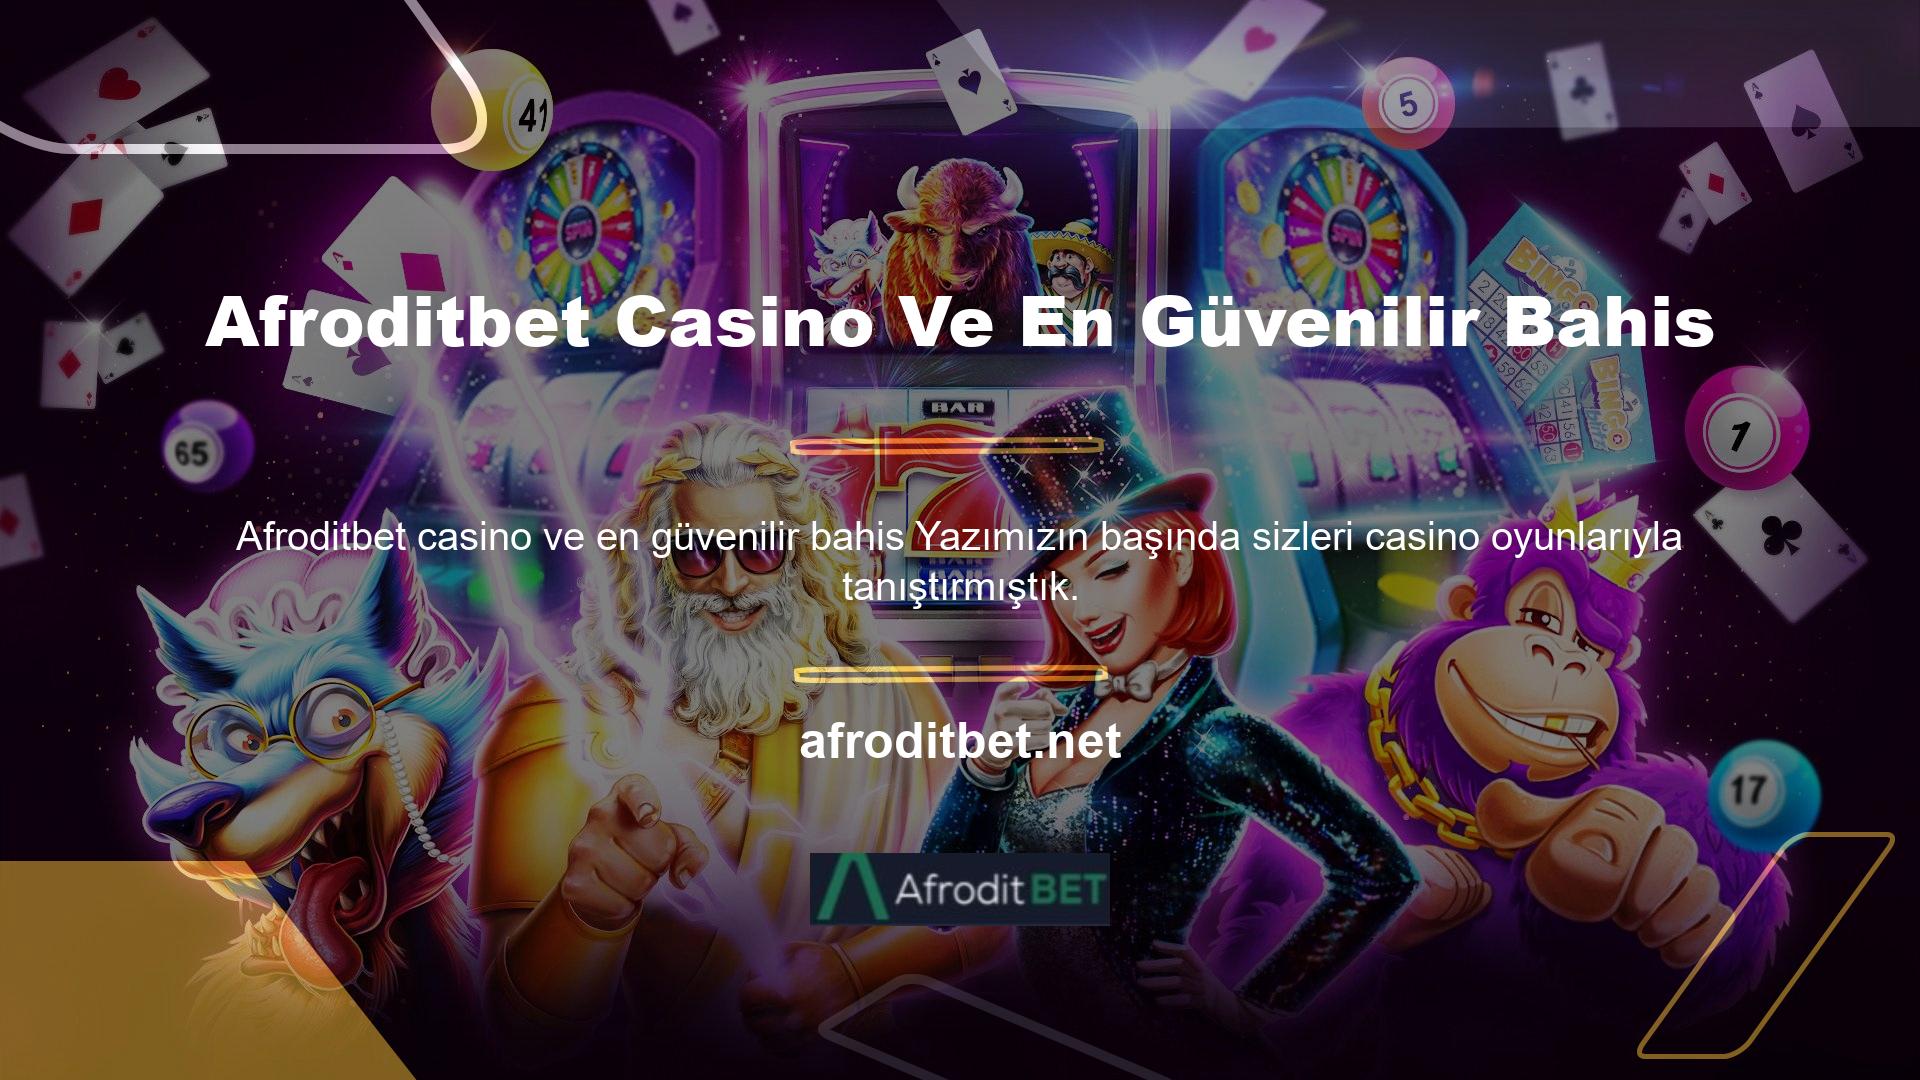 Afroditbet Casino sayesinde en iyi oyunları kurban olmadan oynayabilirsiniz